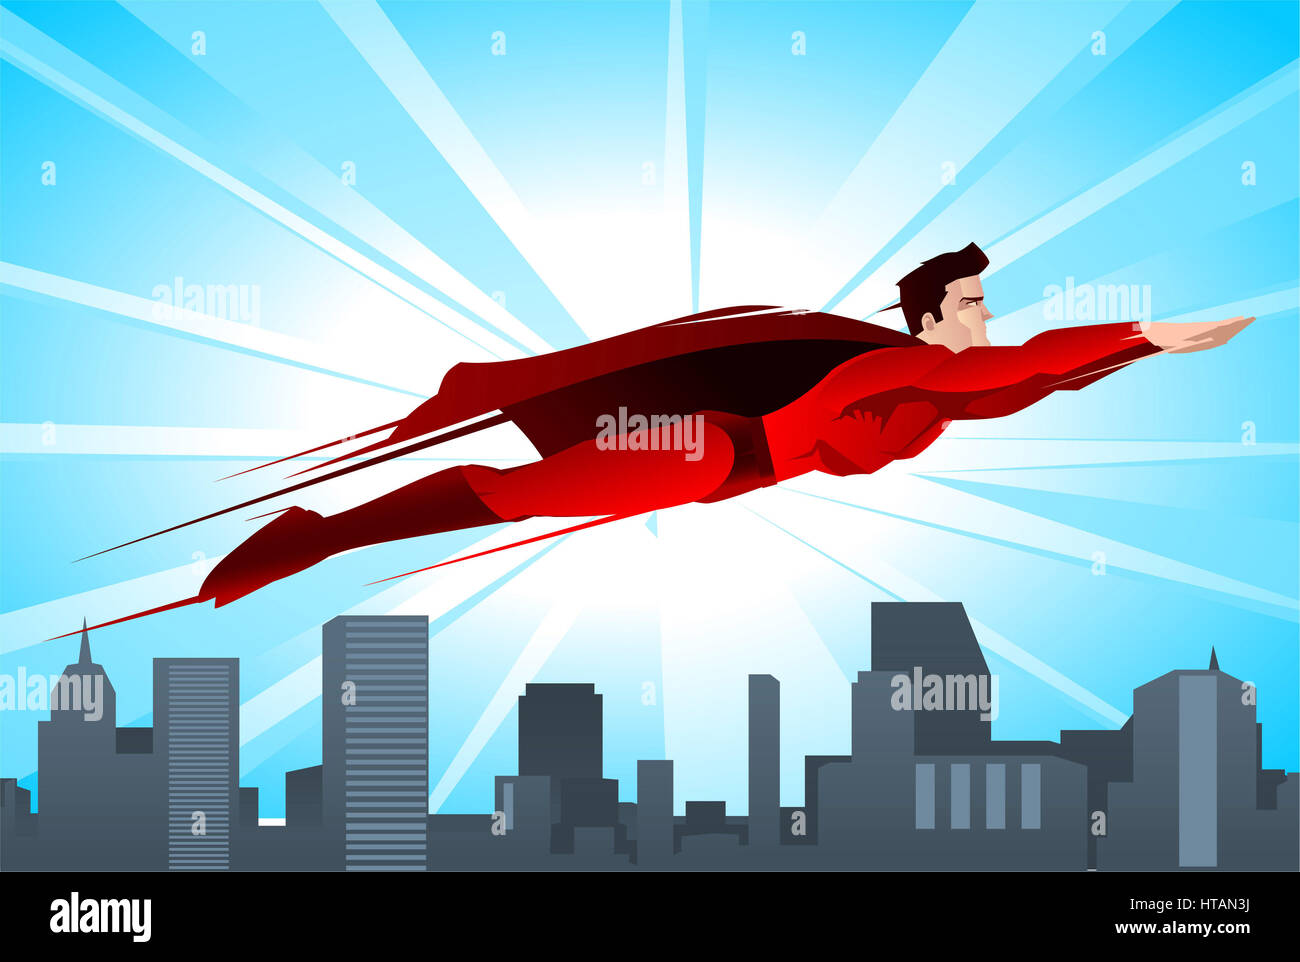 Glanzende Superhelden Fliegt Uber Die Stadt Mit Roten Anzug Und Roten Umhang Vektor Illustration Stockfotografie Alamy